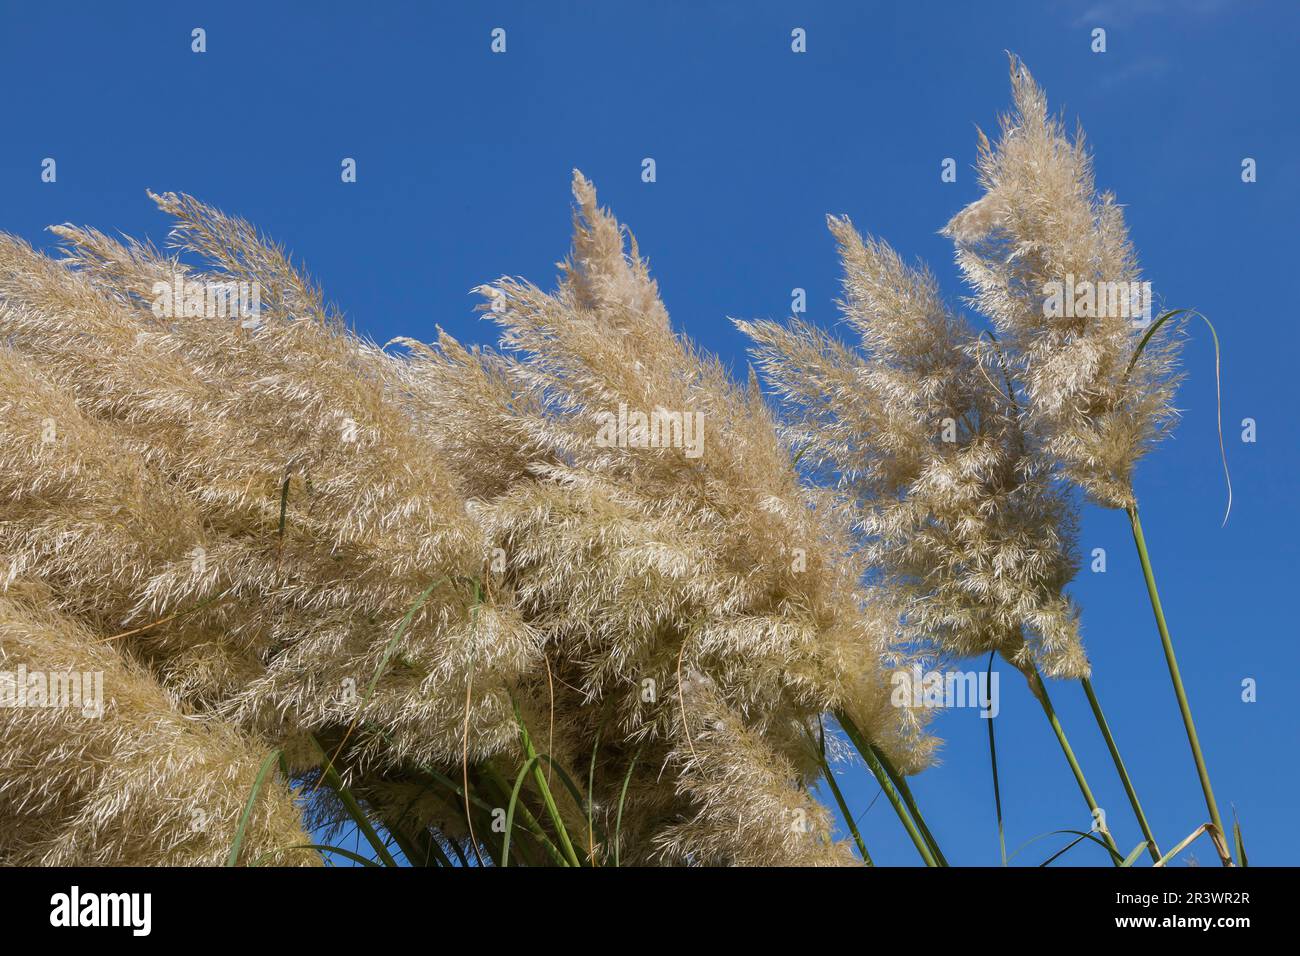 Cortaderia selloana, Pampas grass, Germany Stock Photo